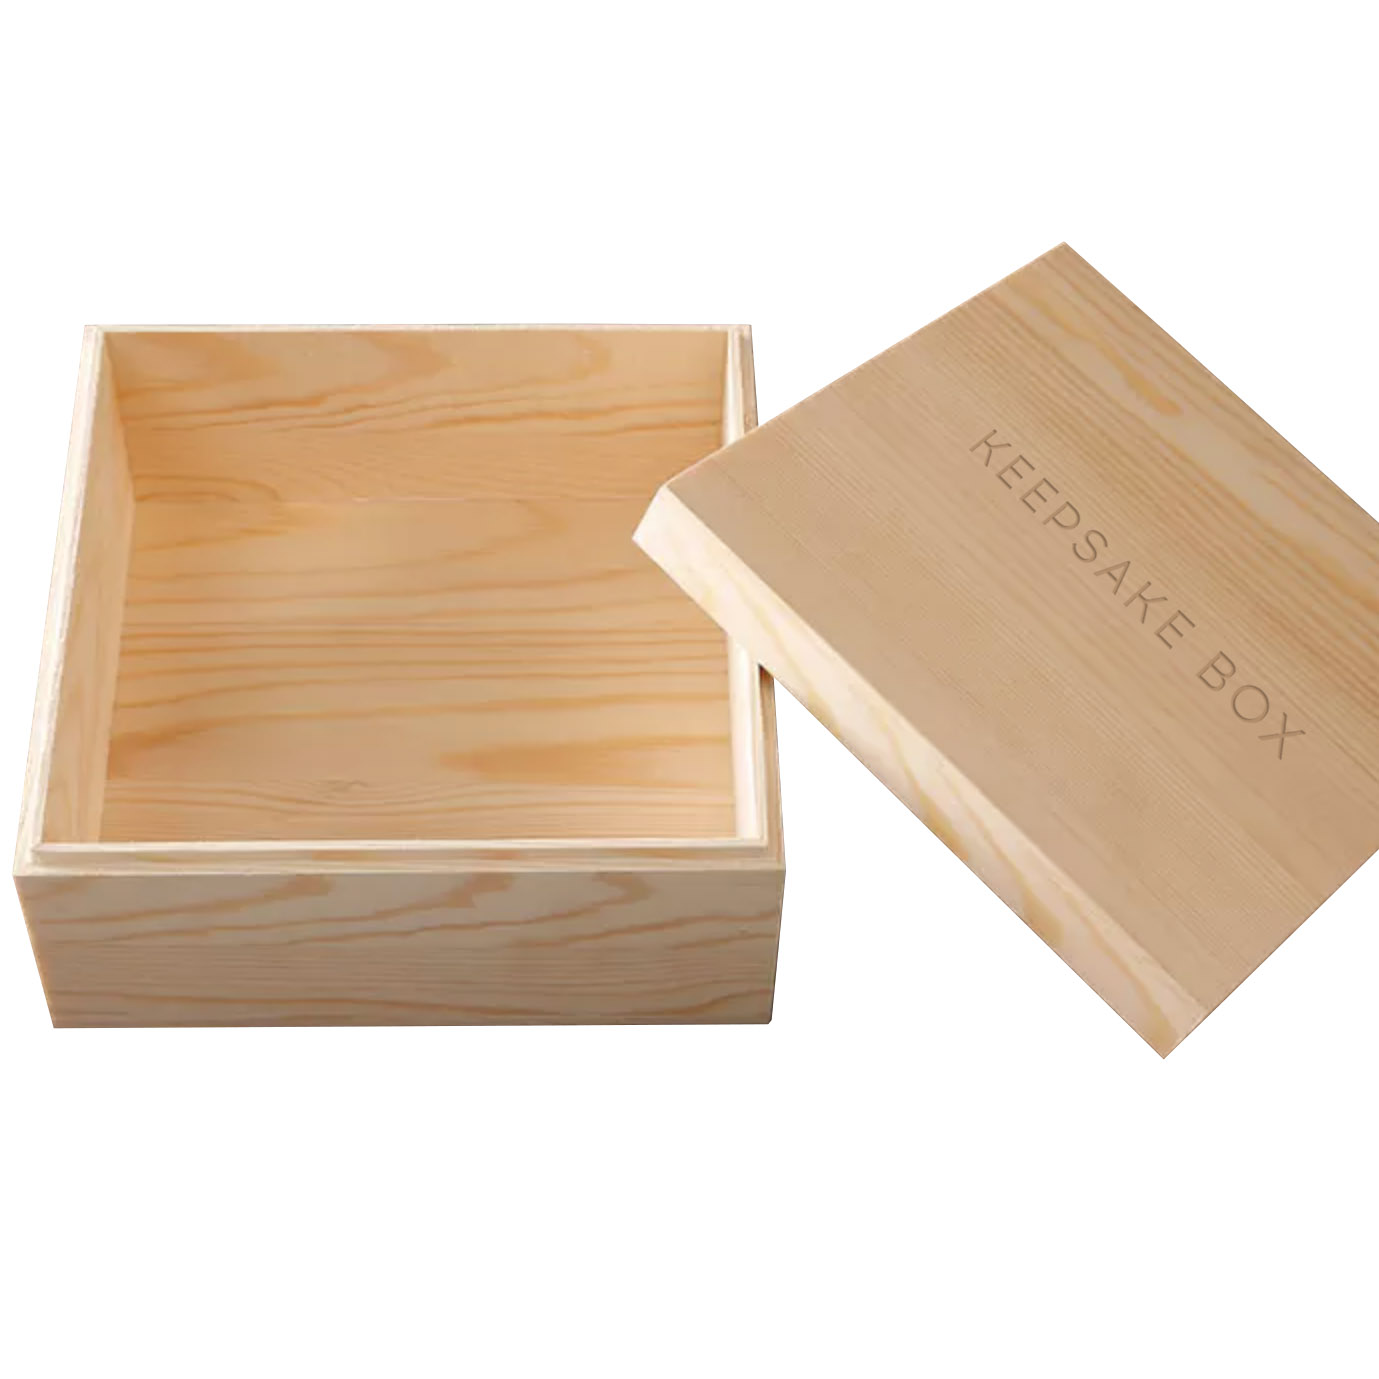 Keepsake Box Wooden Keepsake Box Memory Box Personalized 